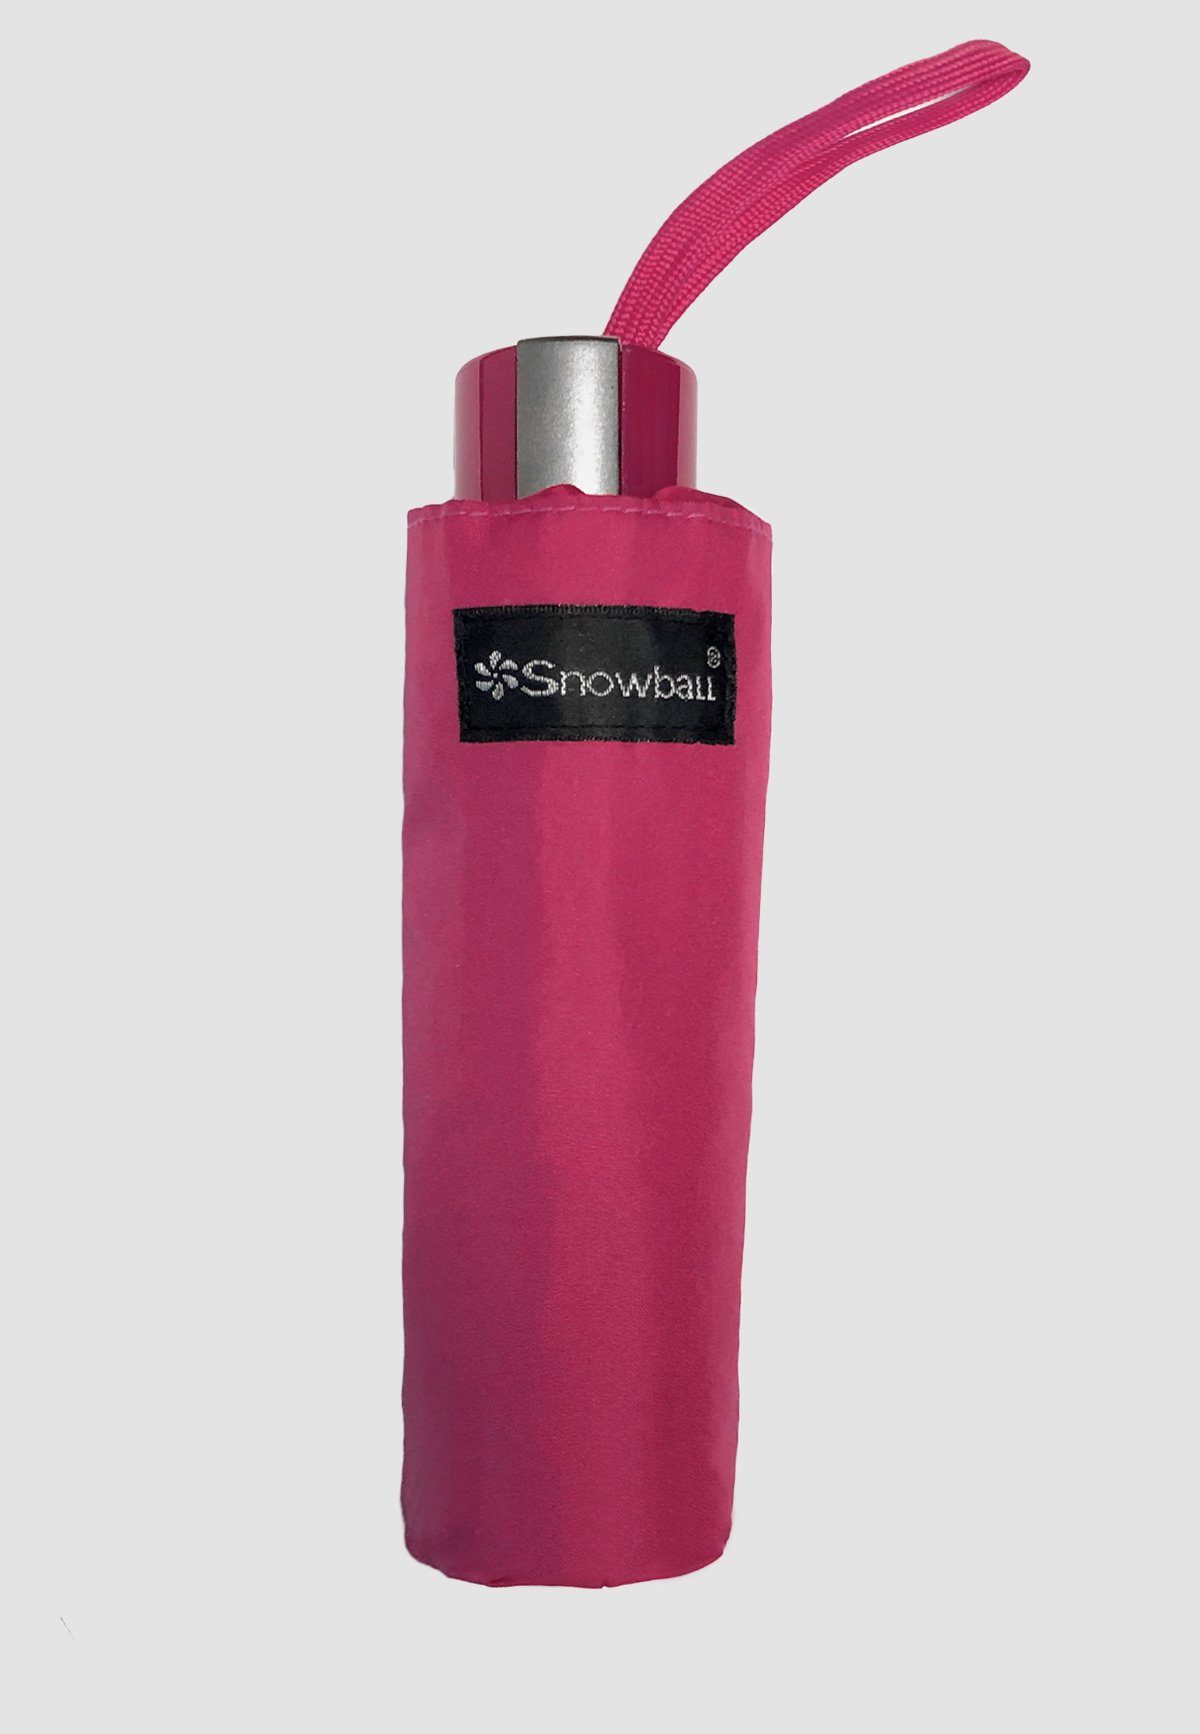 Regenschirm Taschenregenschirm in Ausführung, Kleiner Leichte 4683 ANELY Taschen Pink